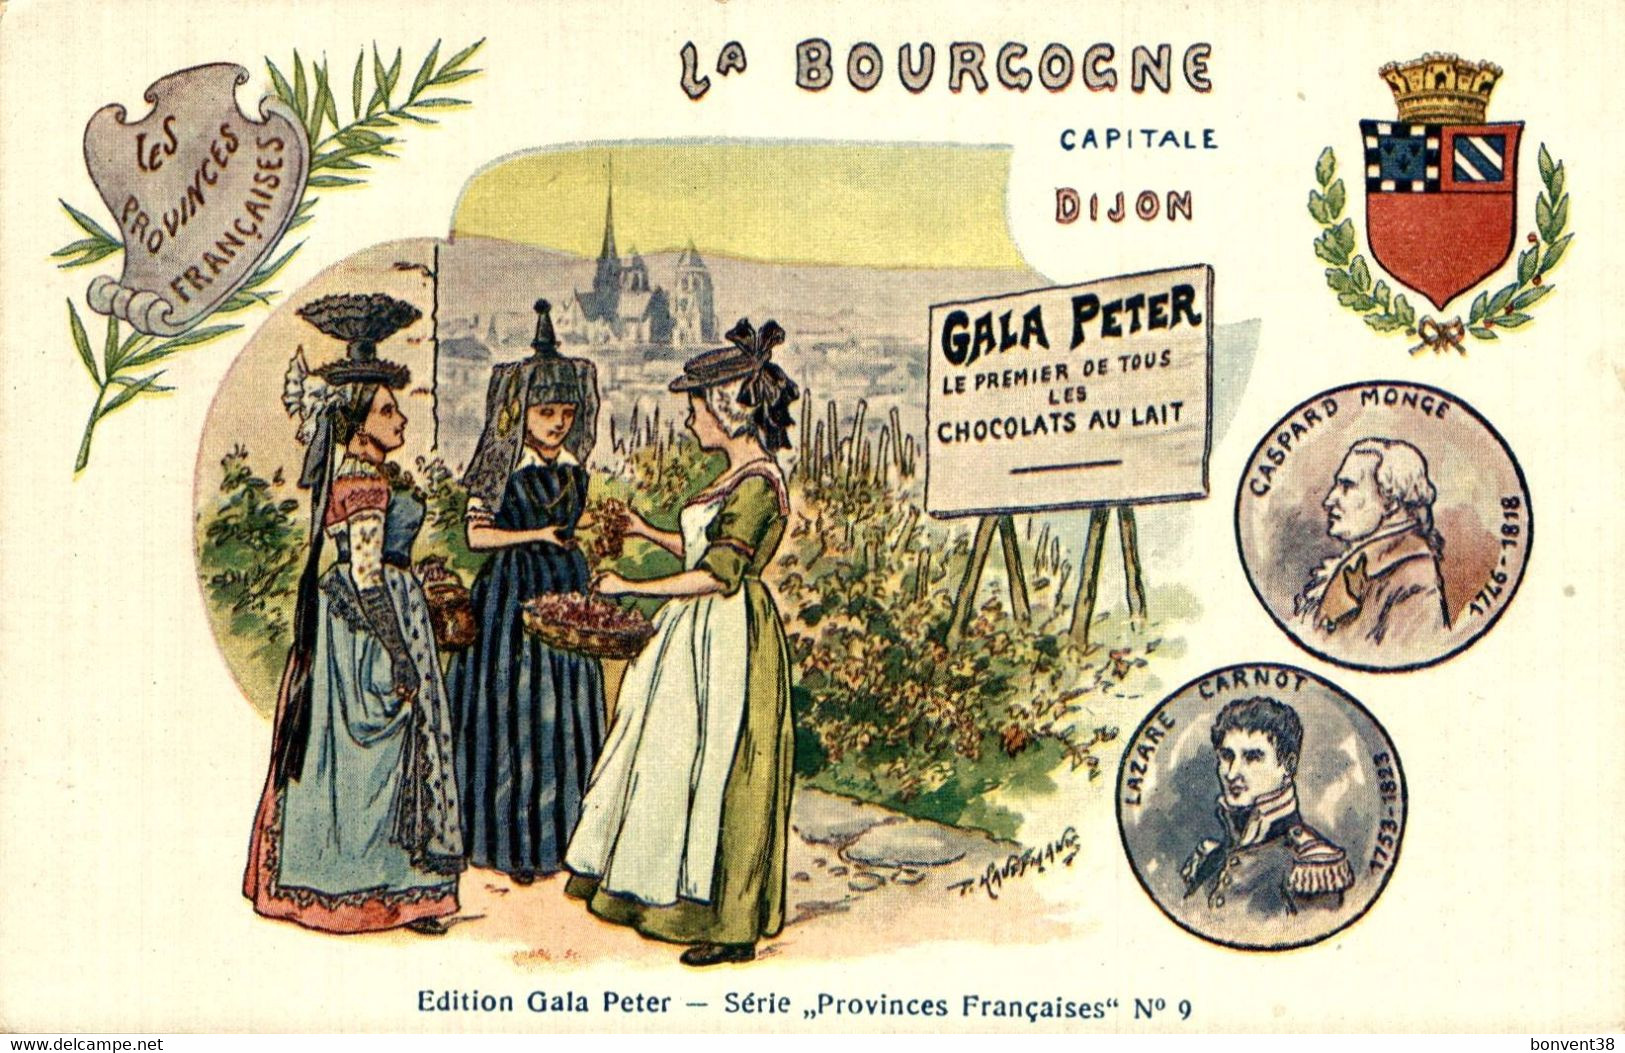 I0609 - La BOURGOGNE - DIJON - GALA PETER - Le Premier De Tous Les CHOCOLATS AU LAIT - Publicité